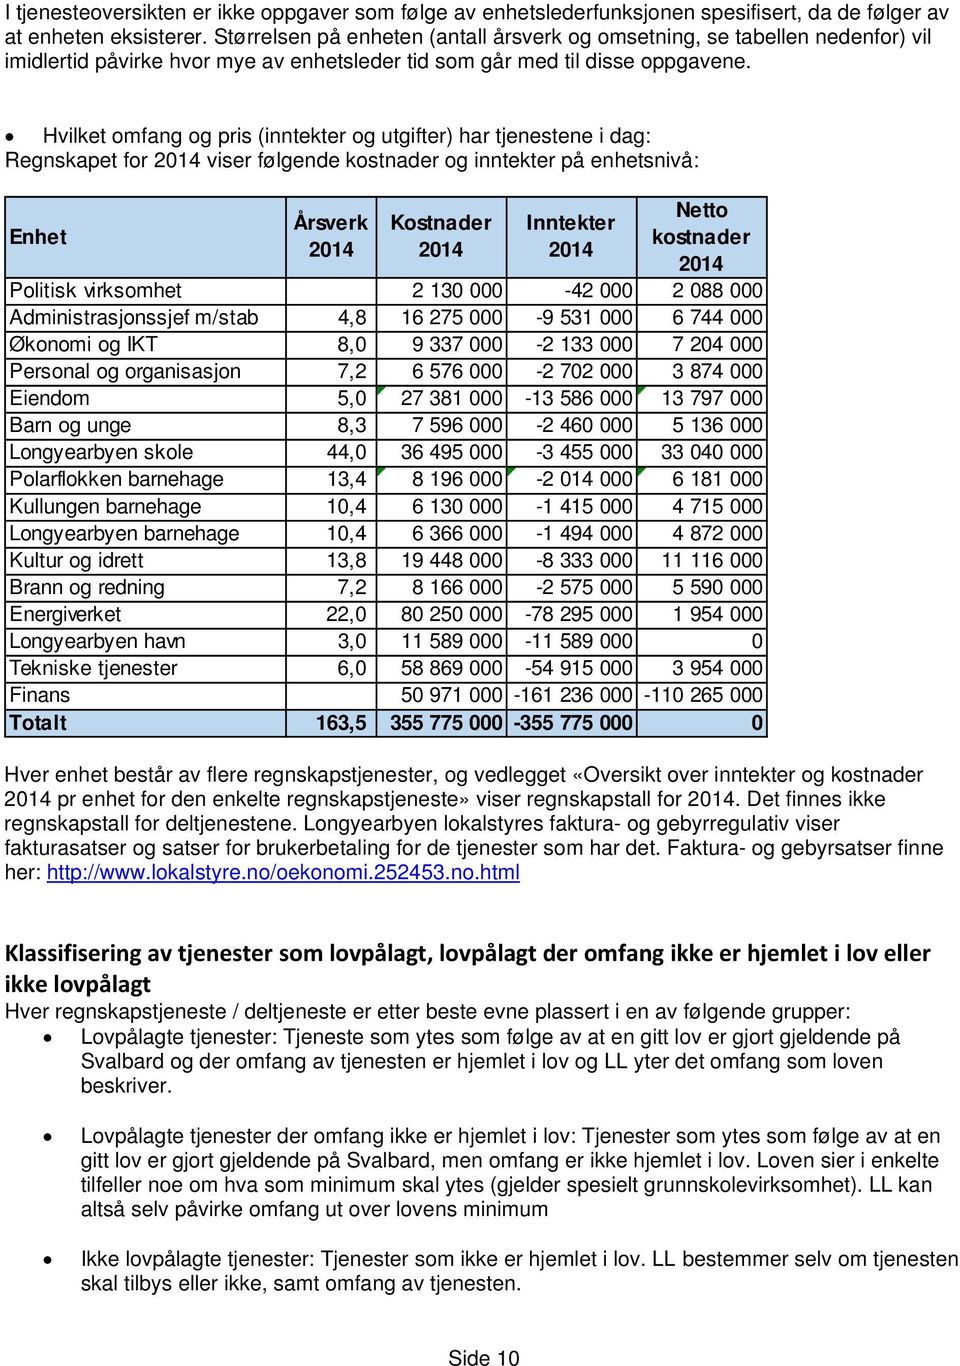 Hvilket omfang og pris (inntekter og utgifter) har tjenestene i dag: Regnskapet for 2014 viser følgende kostnader og inntekter på enhetsnivå: Enhet Årsverk 2014 Kostnader 2014 Inntekter 2014 Netto